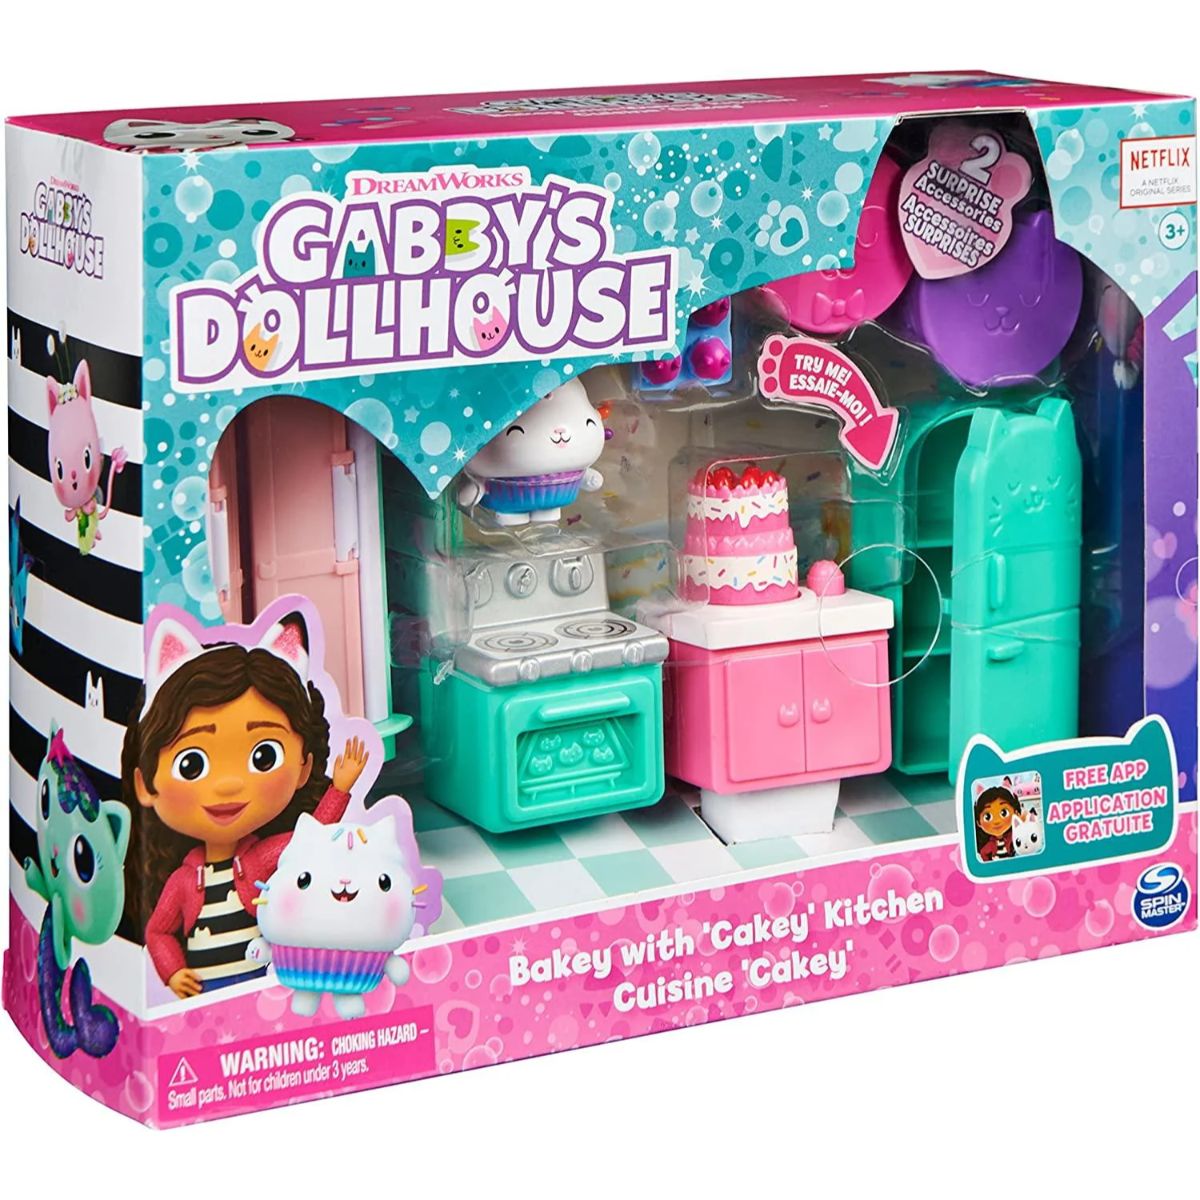 Set de joaca, Bucatarie cu accesorii, Gabby's Dollhouse, Bakey with Cakey Kitchen, 20130506